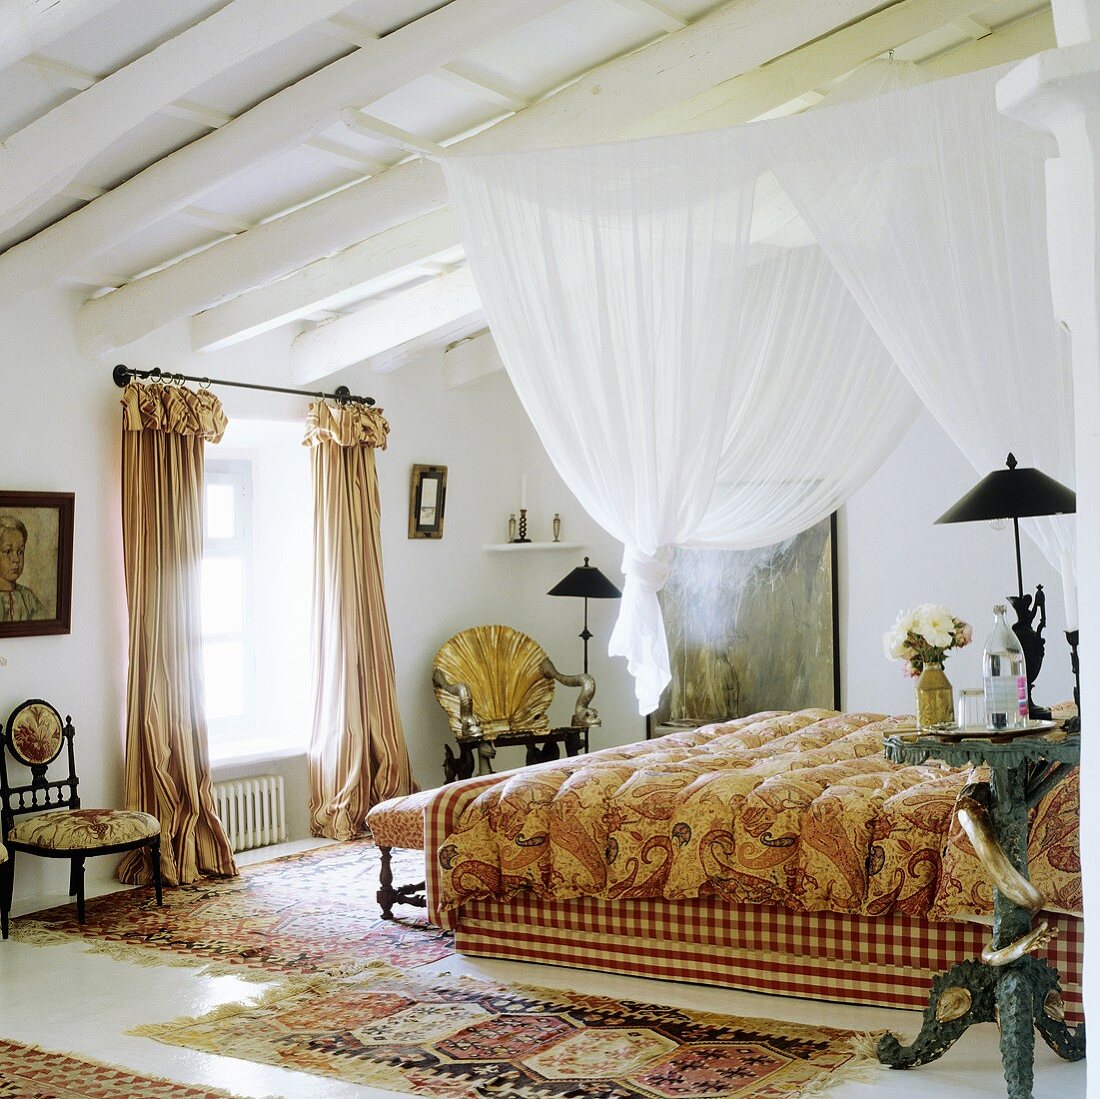 Weisser Stoffhimmel an Holzbalkendecke über Bett und antike Landhausstühle neben Fenster